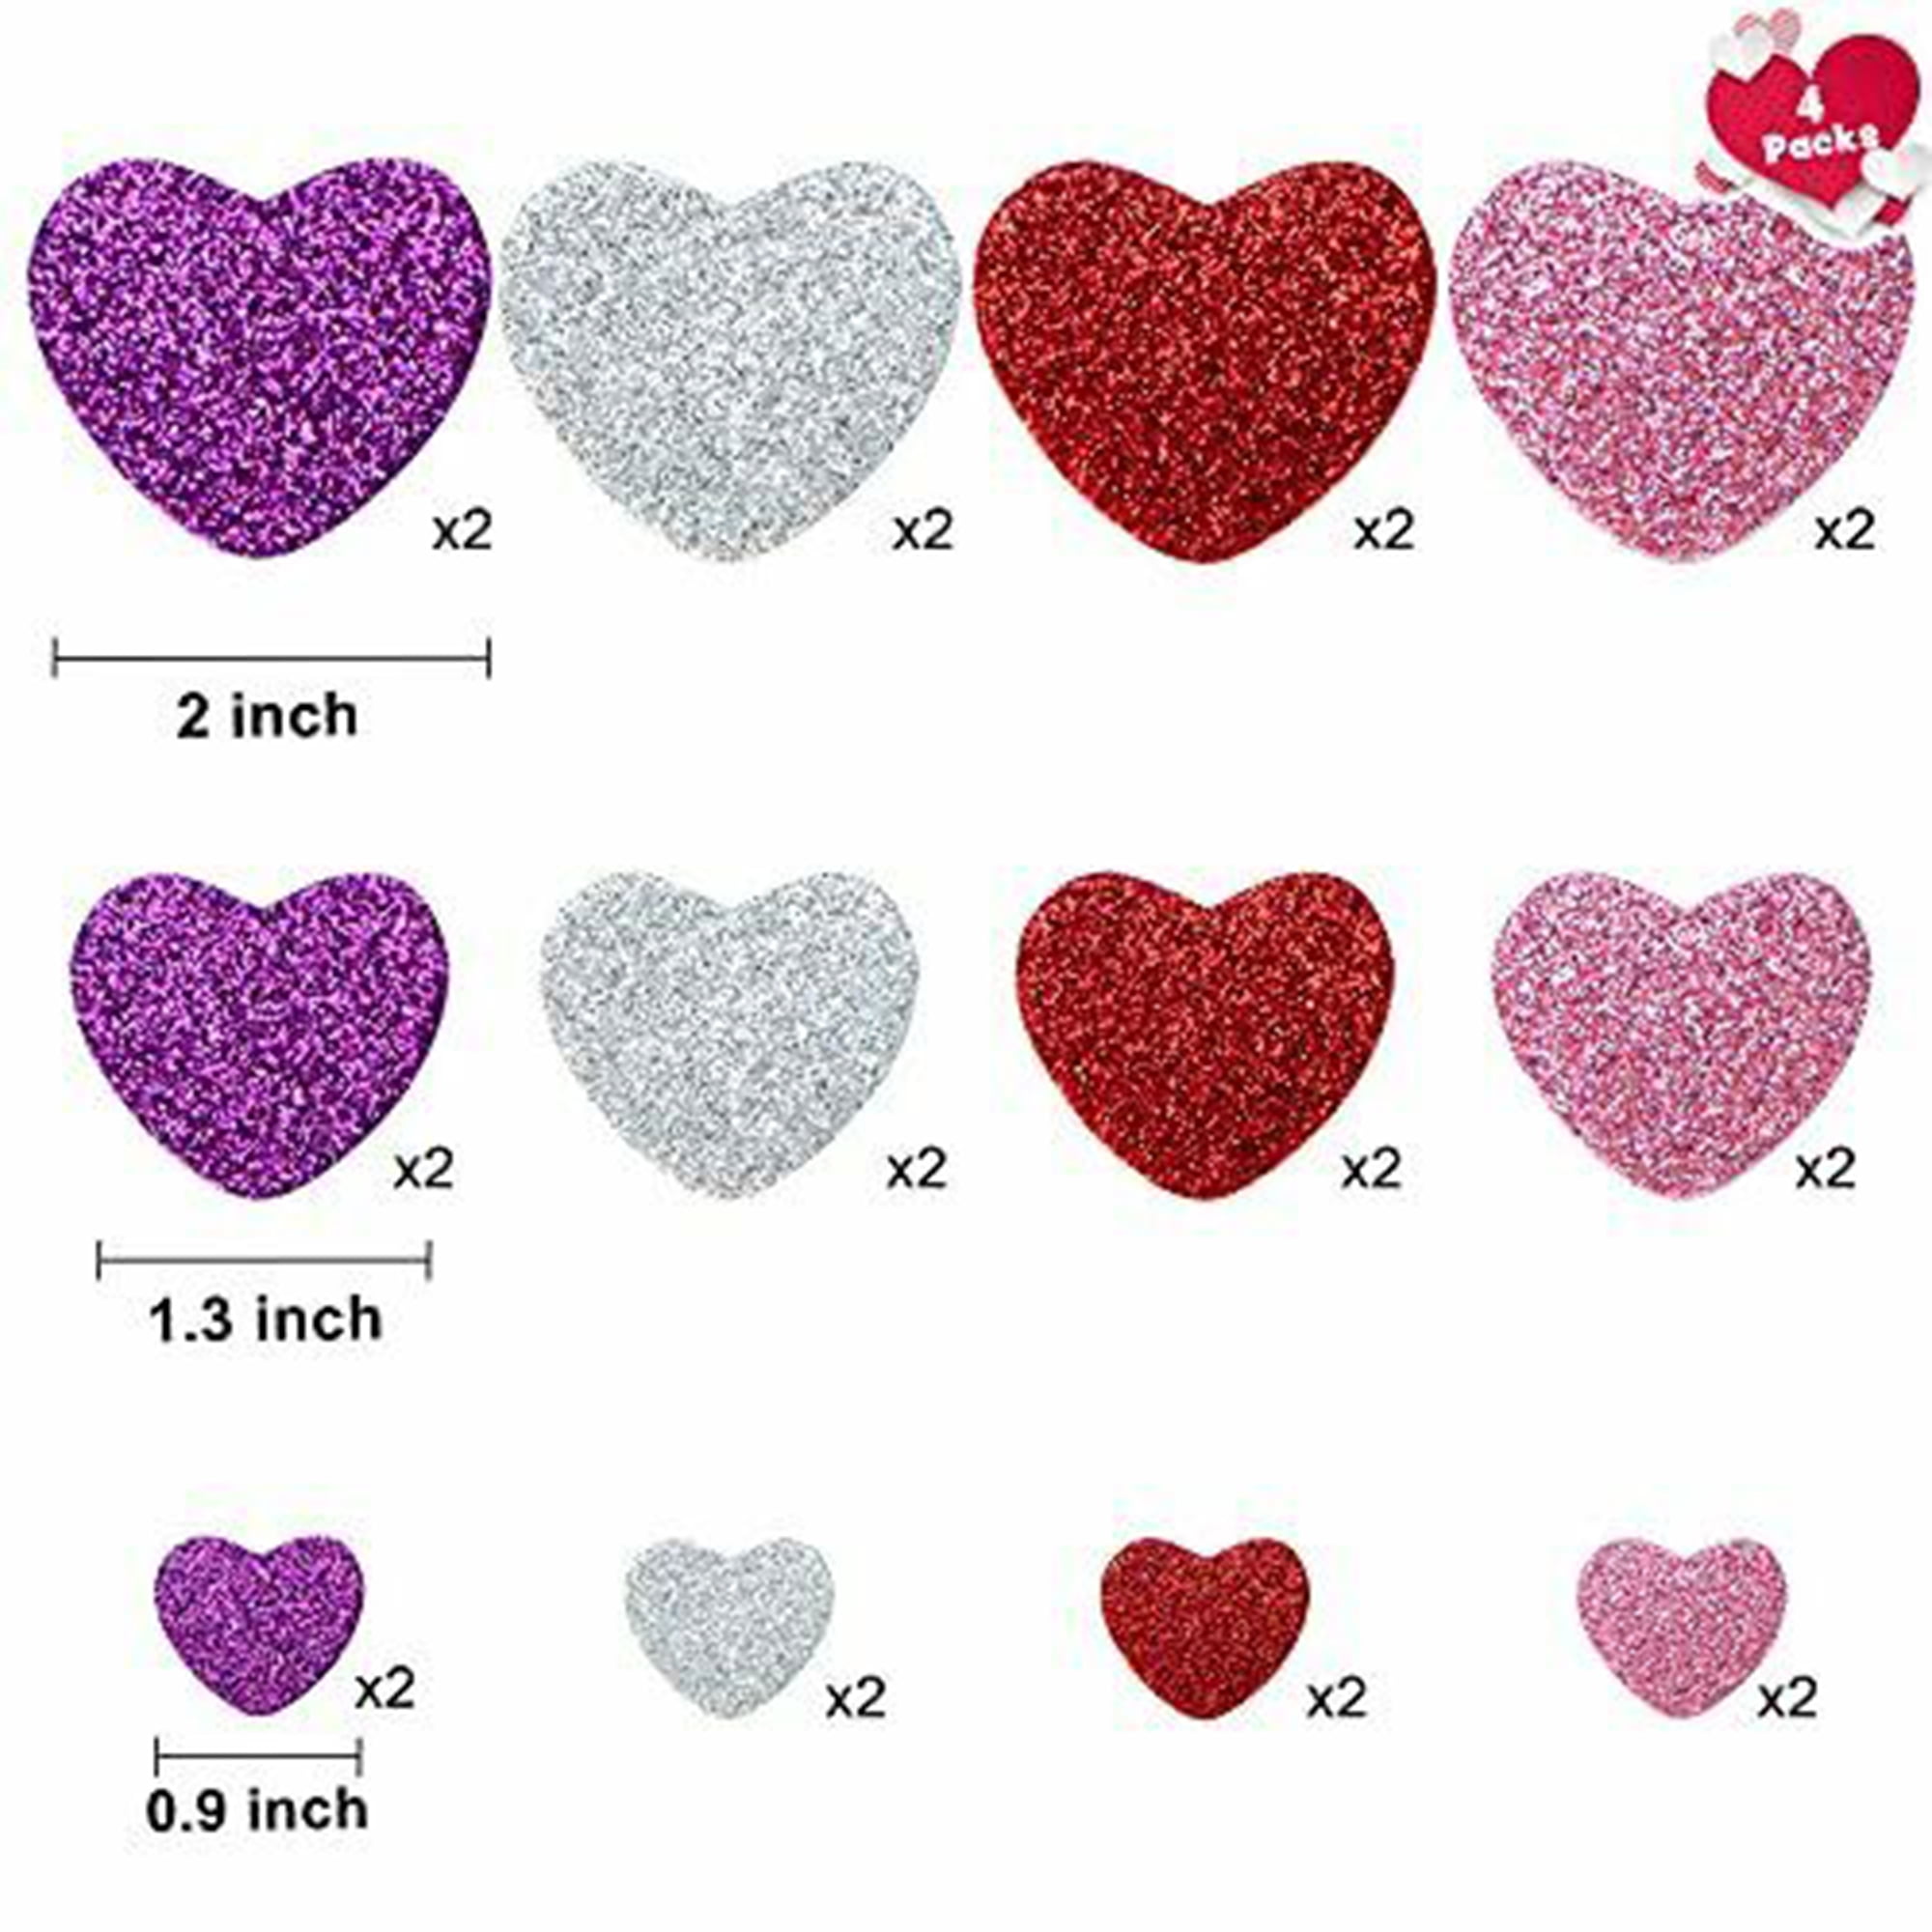 EconoCrafts: Valentine Foam Heart Stickers